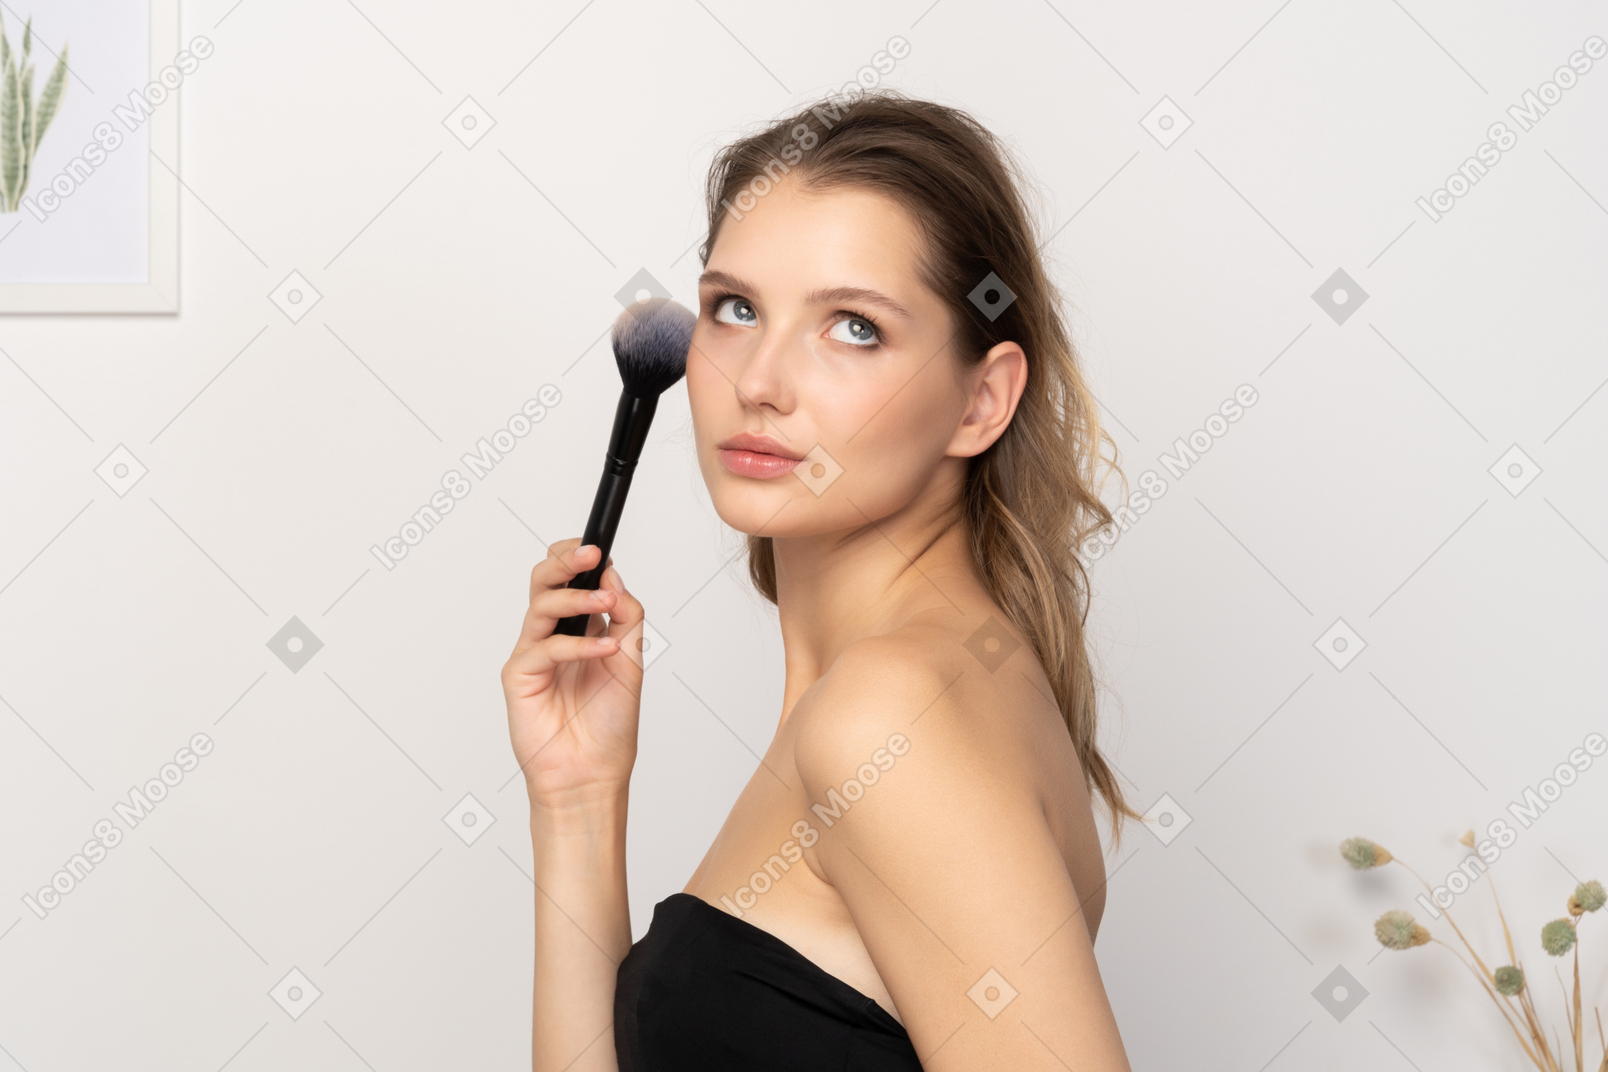 Vista lateral de una mujer joven sensual sosteniendo un pincel de maquillaje y mirando a la cámara